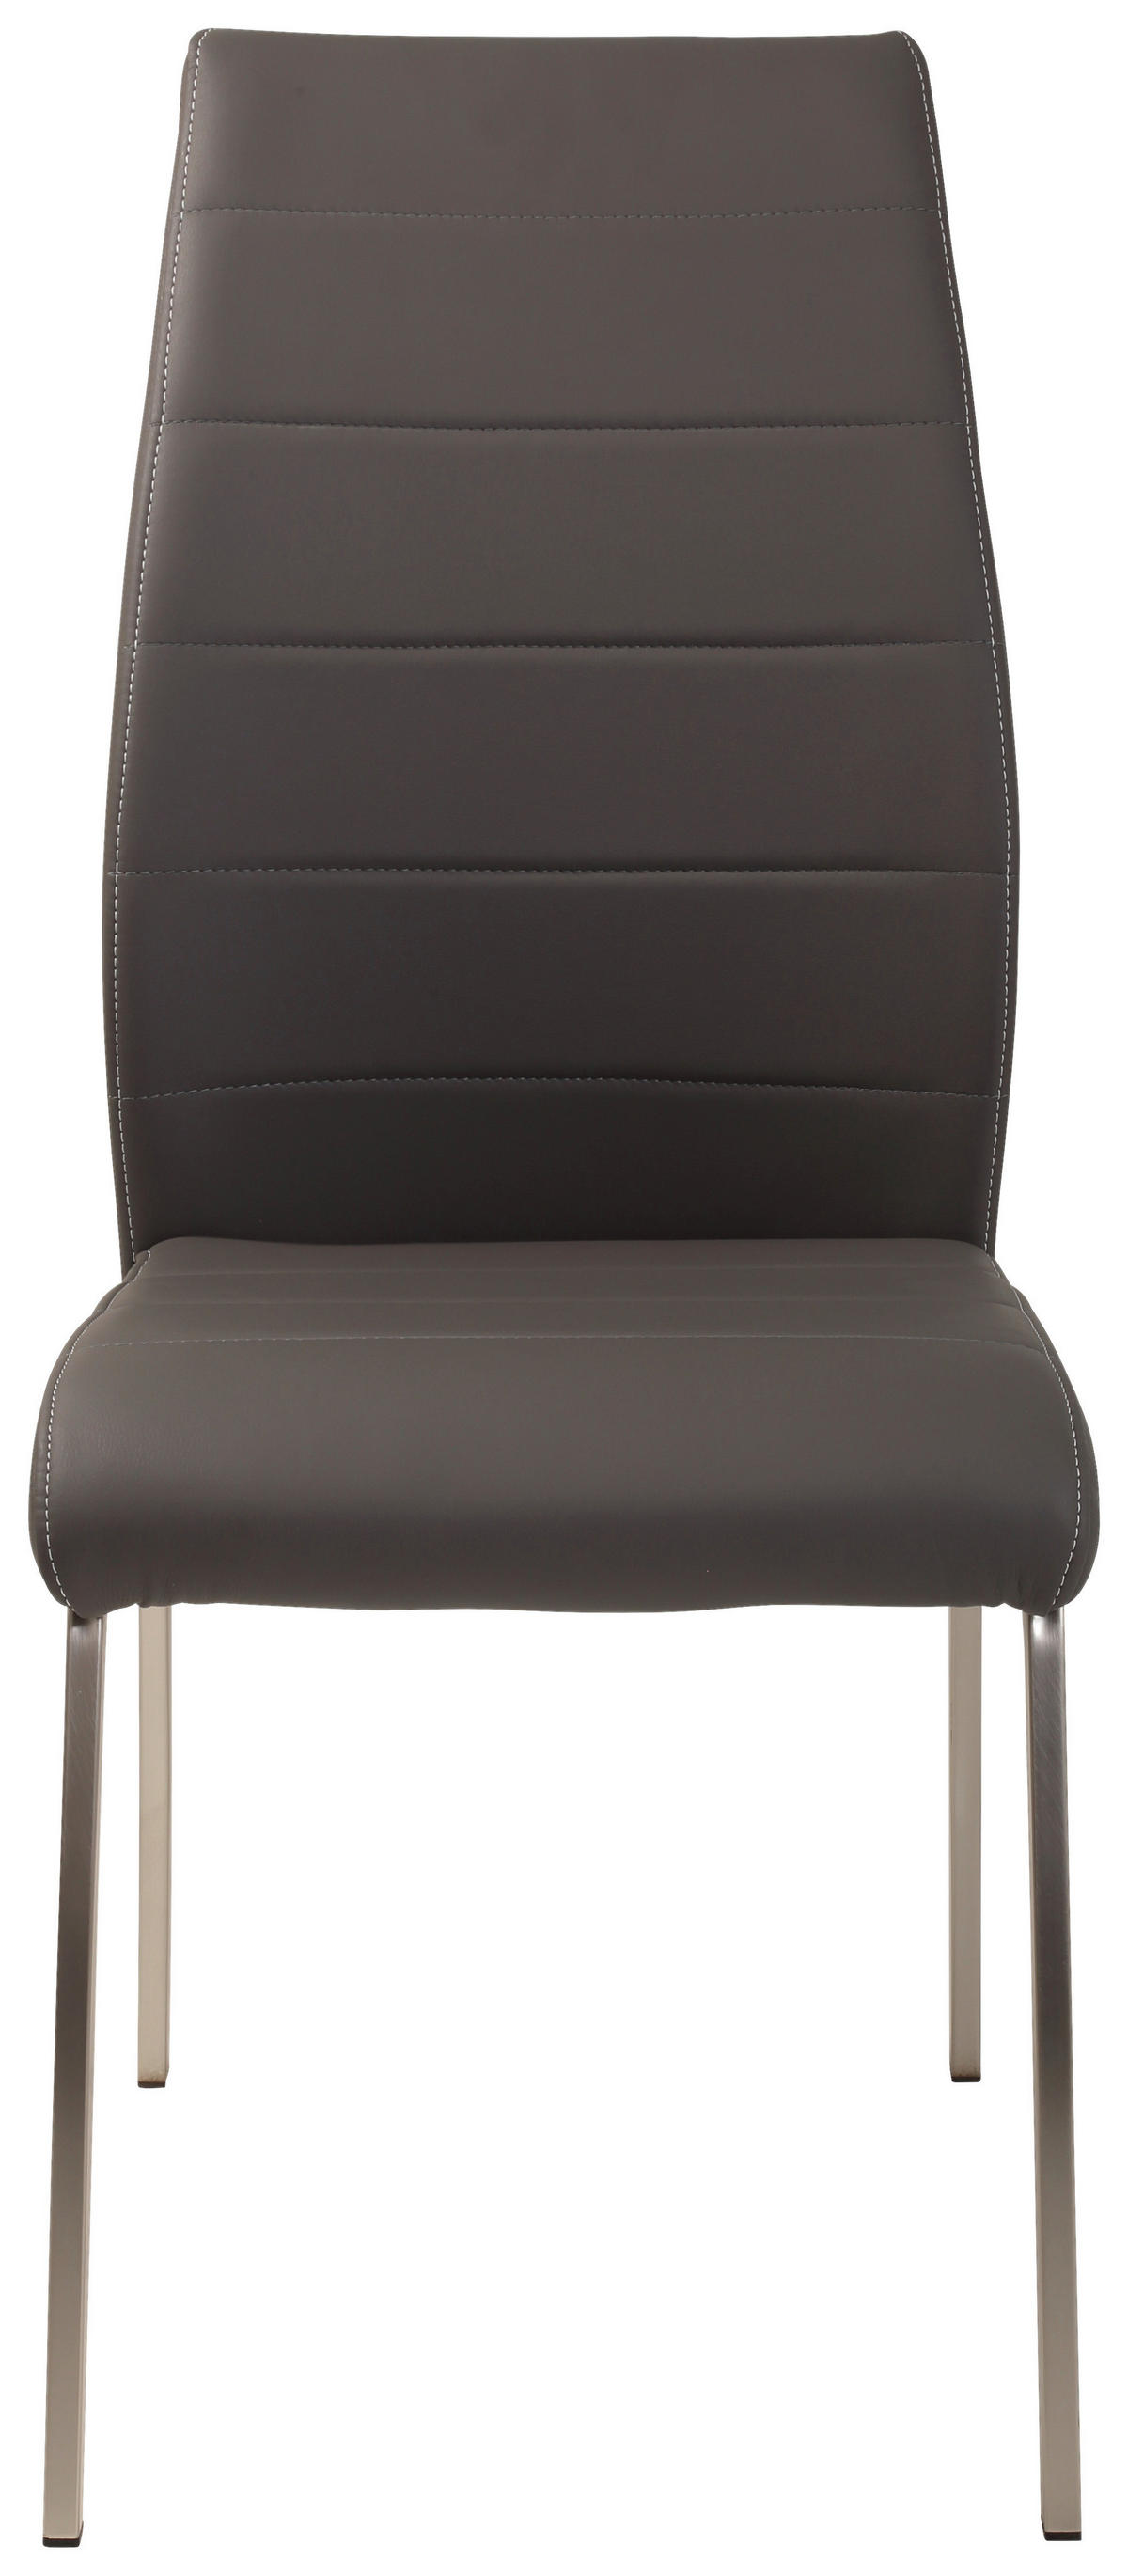 4-teiliges Stuhl-Set Lederlook in Grau bestellen